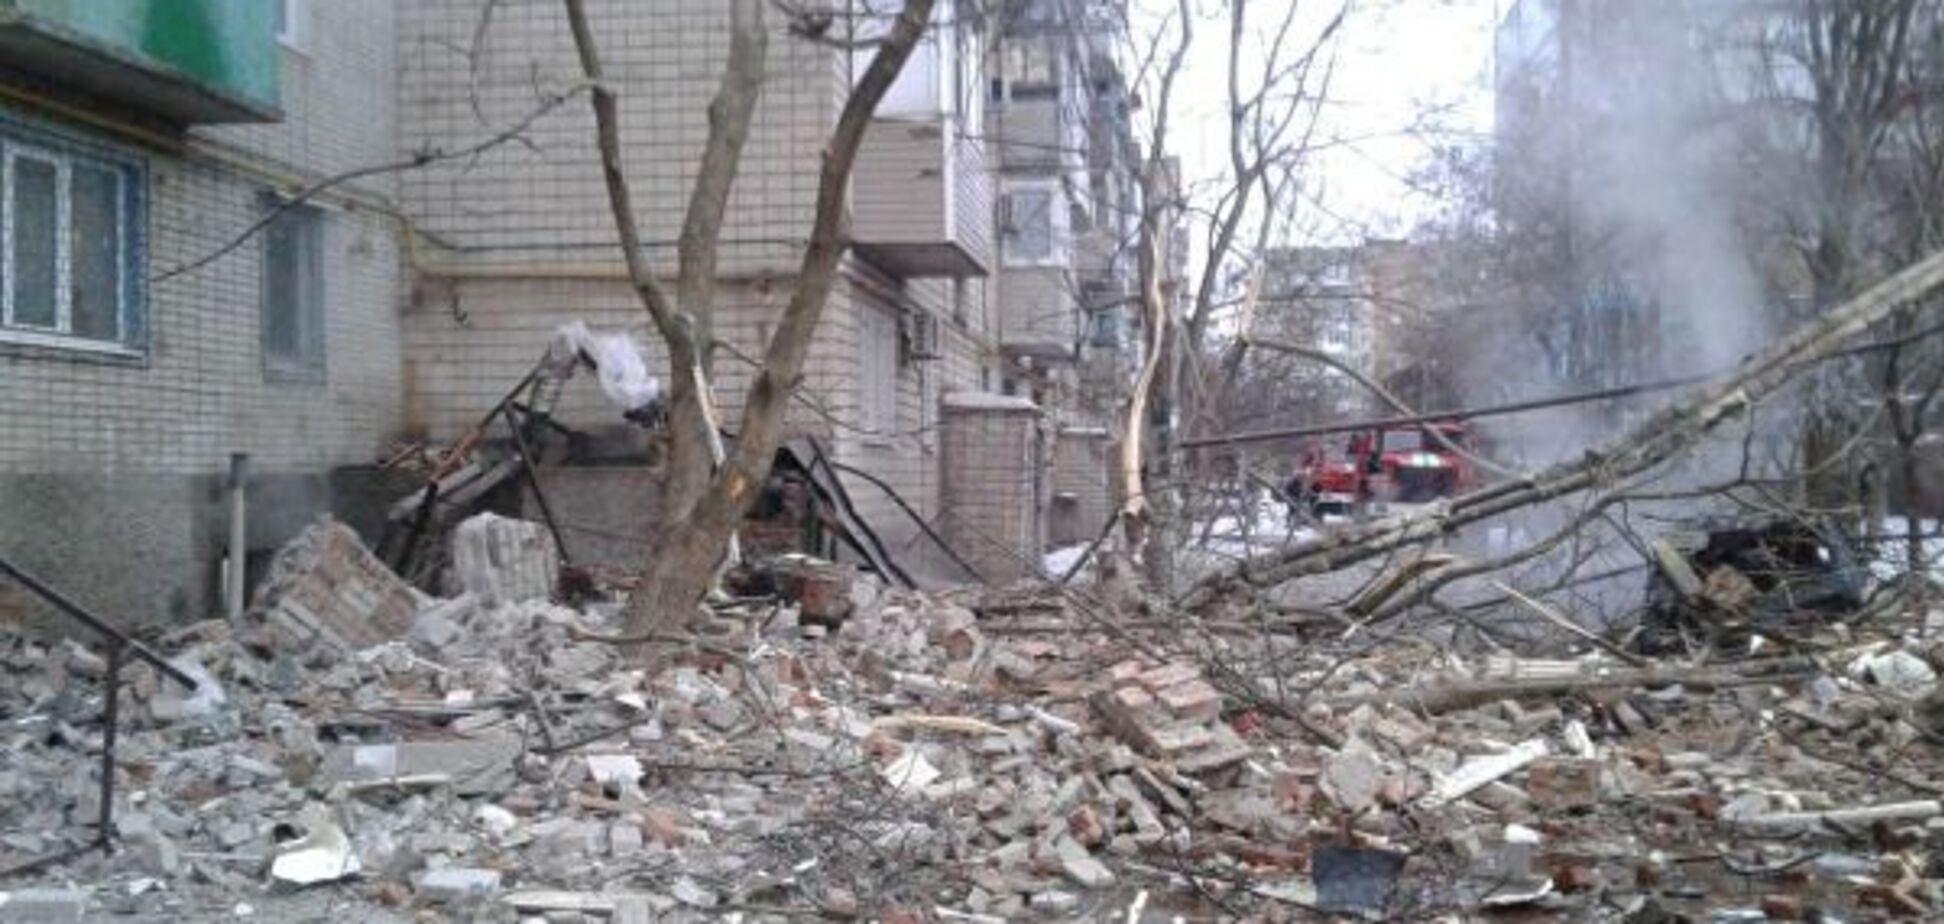 Є загроза обвалення будинку: рятувальники оголосили режим НС у Шахтах